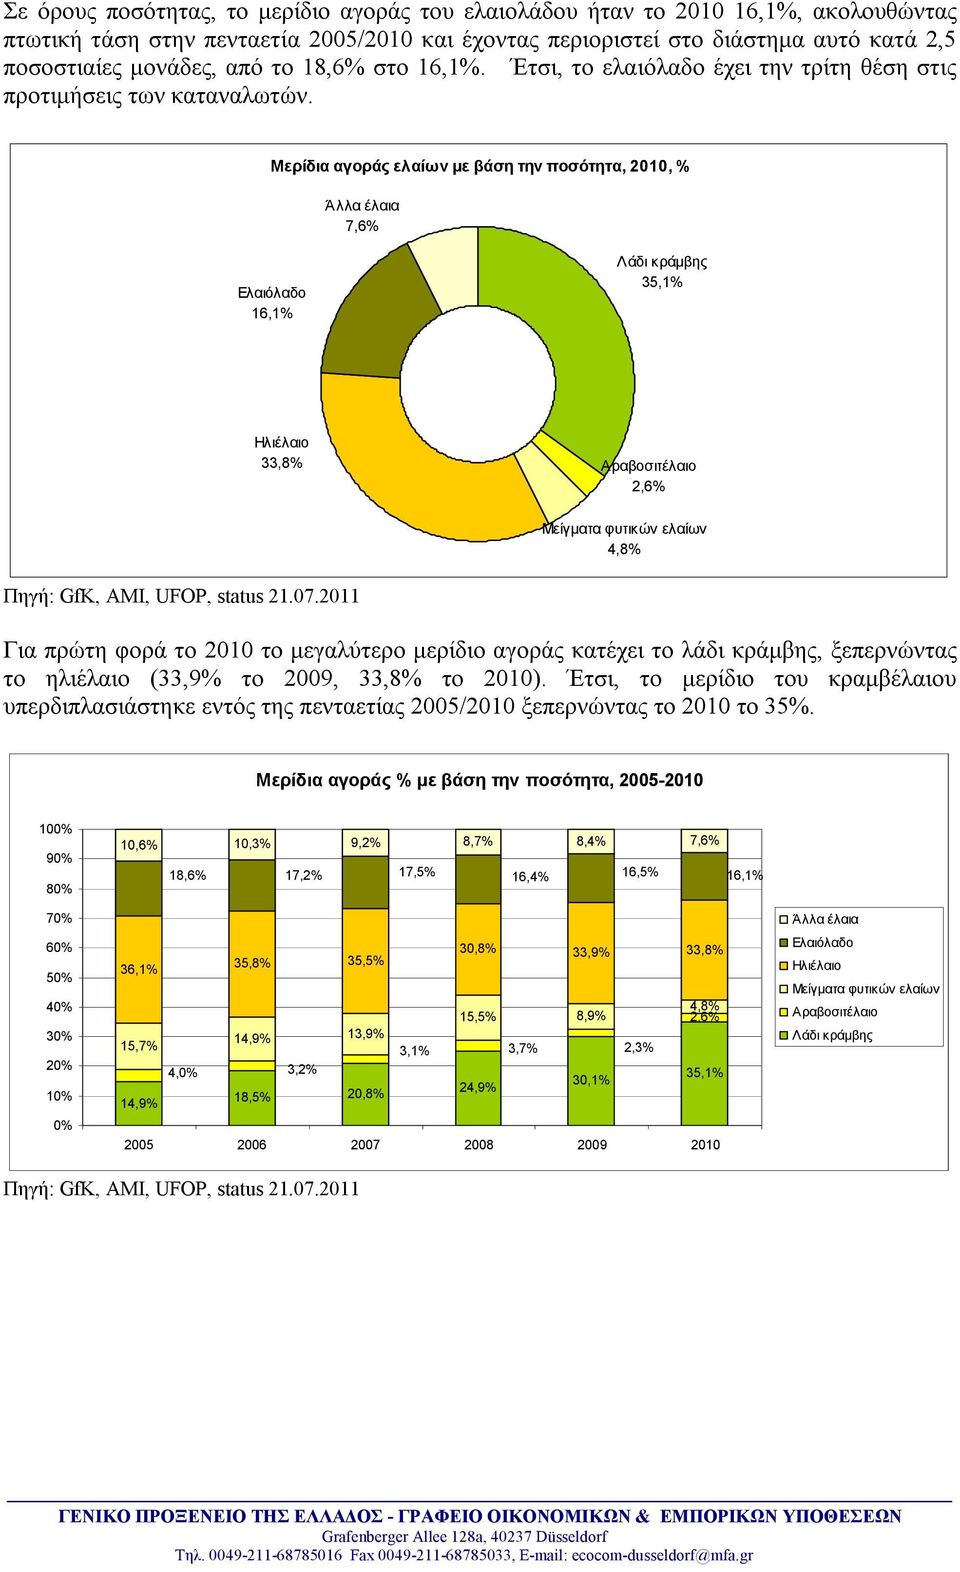 Μερίδια αγοράς ελαίων με βάση την ποσότητα, 2010, % Άλλα έλαια 7,6% Ελαιόλαδο 16,1% Λάδι κράμβης 35,1% Ηλιέλαιο 33,8% Αραβοσιτέλαιο 2,6% Μείγματα φυτικών ελαίων 4,8% Πηγή: GfK, AMI, UFOP, status 21.